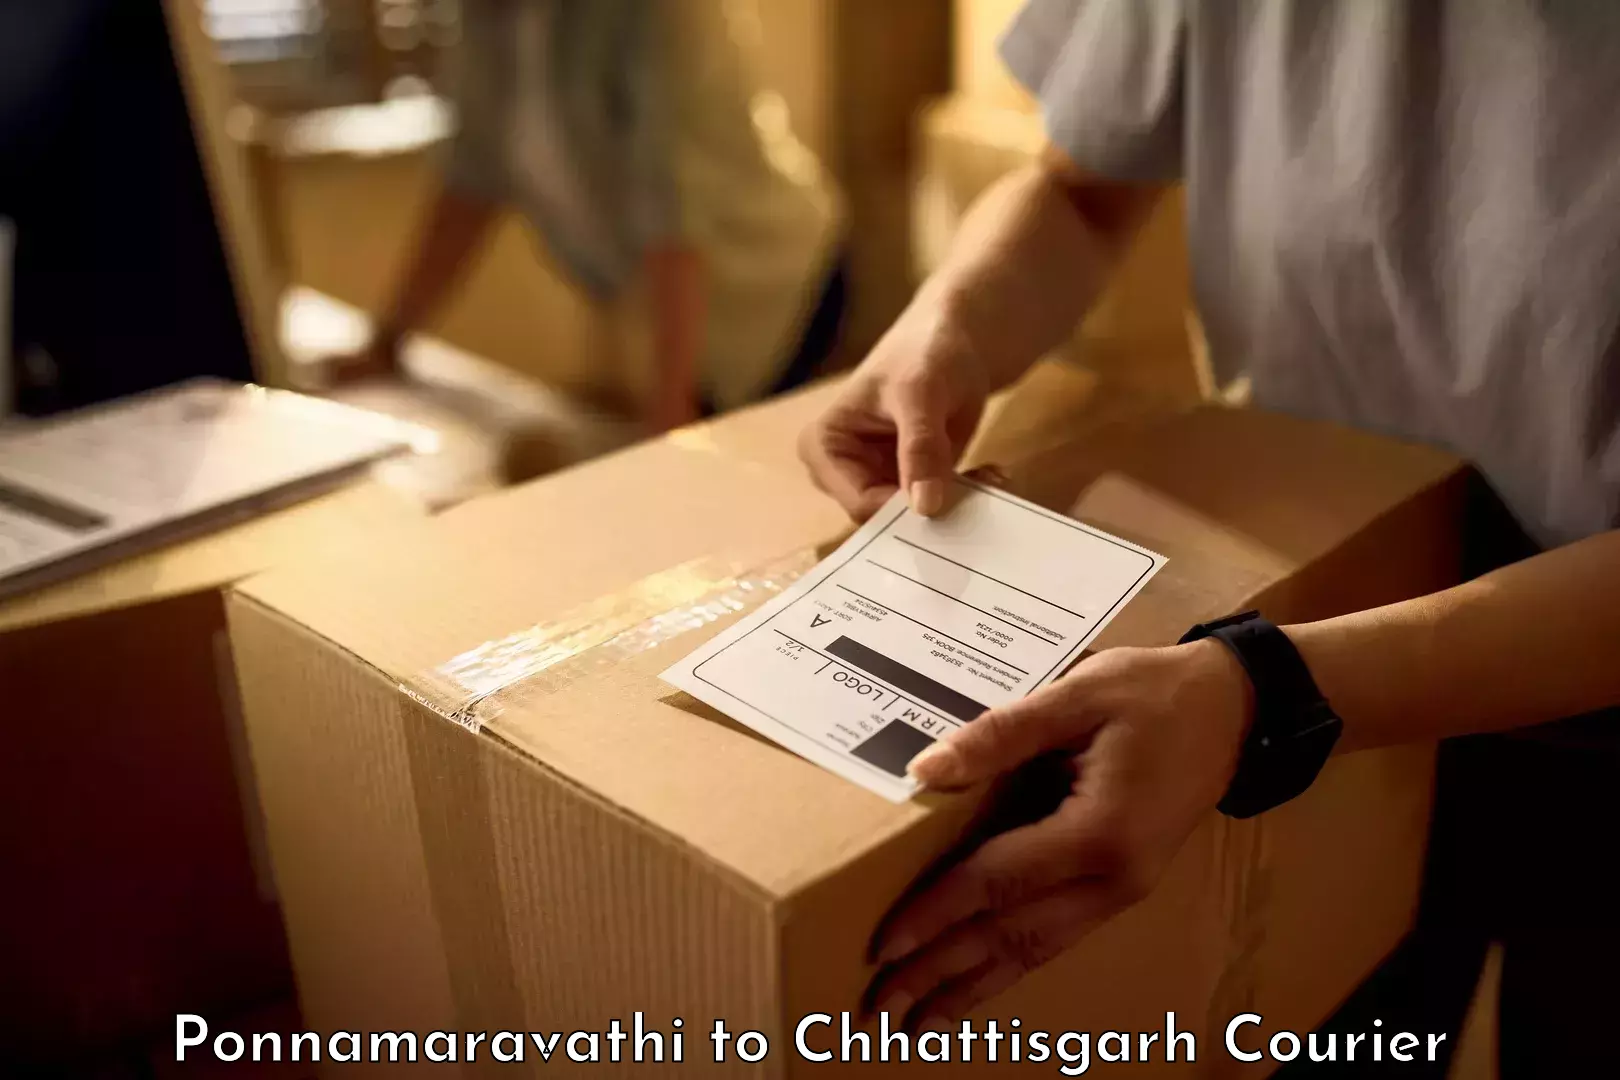 Luggage delivery network Ponnamaravathi to Bargidih